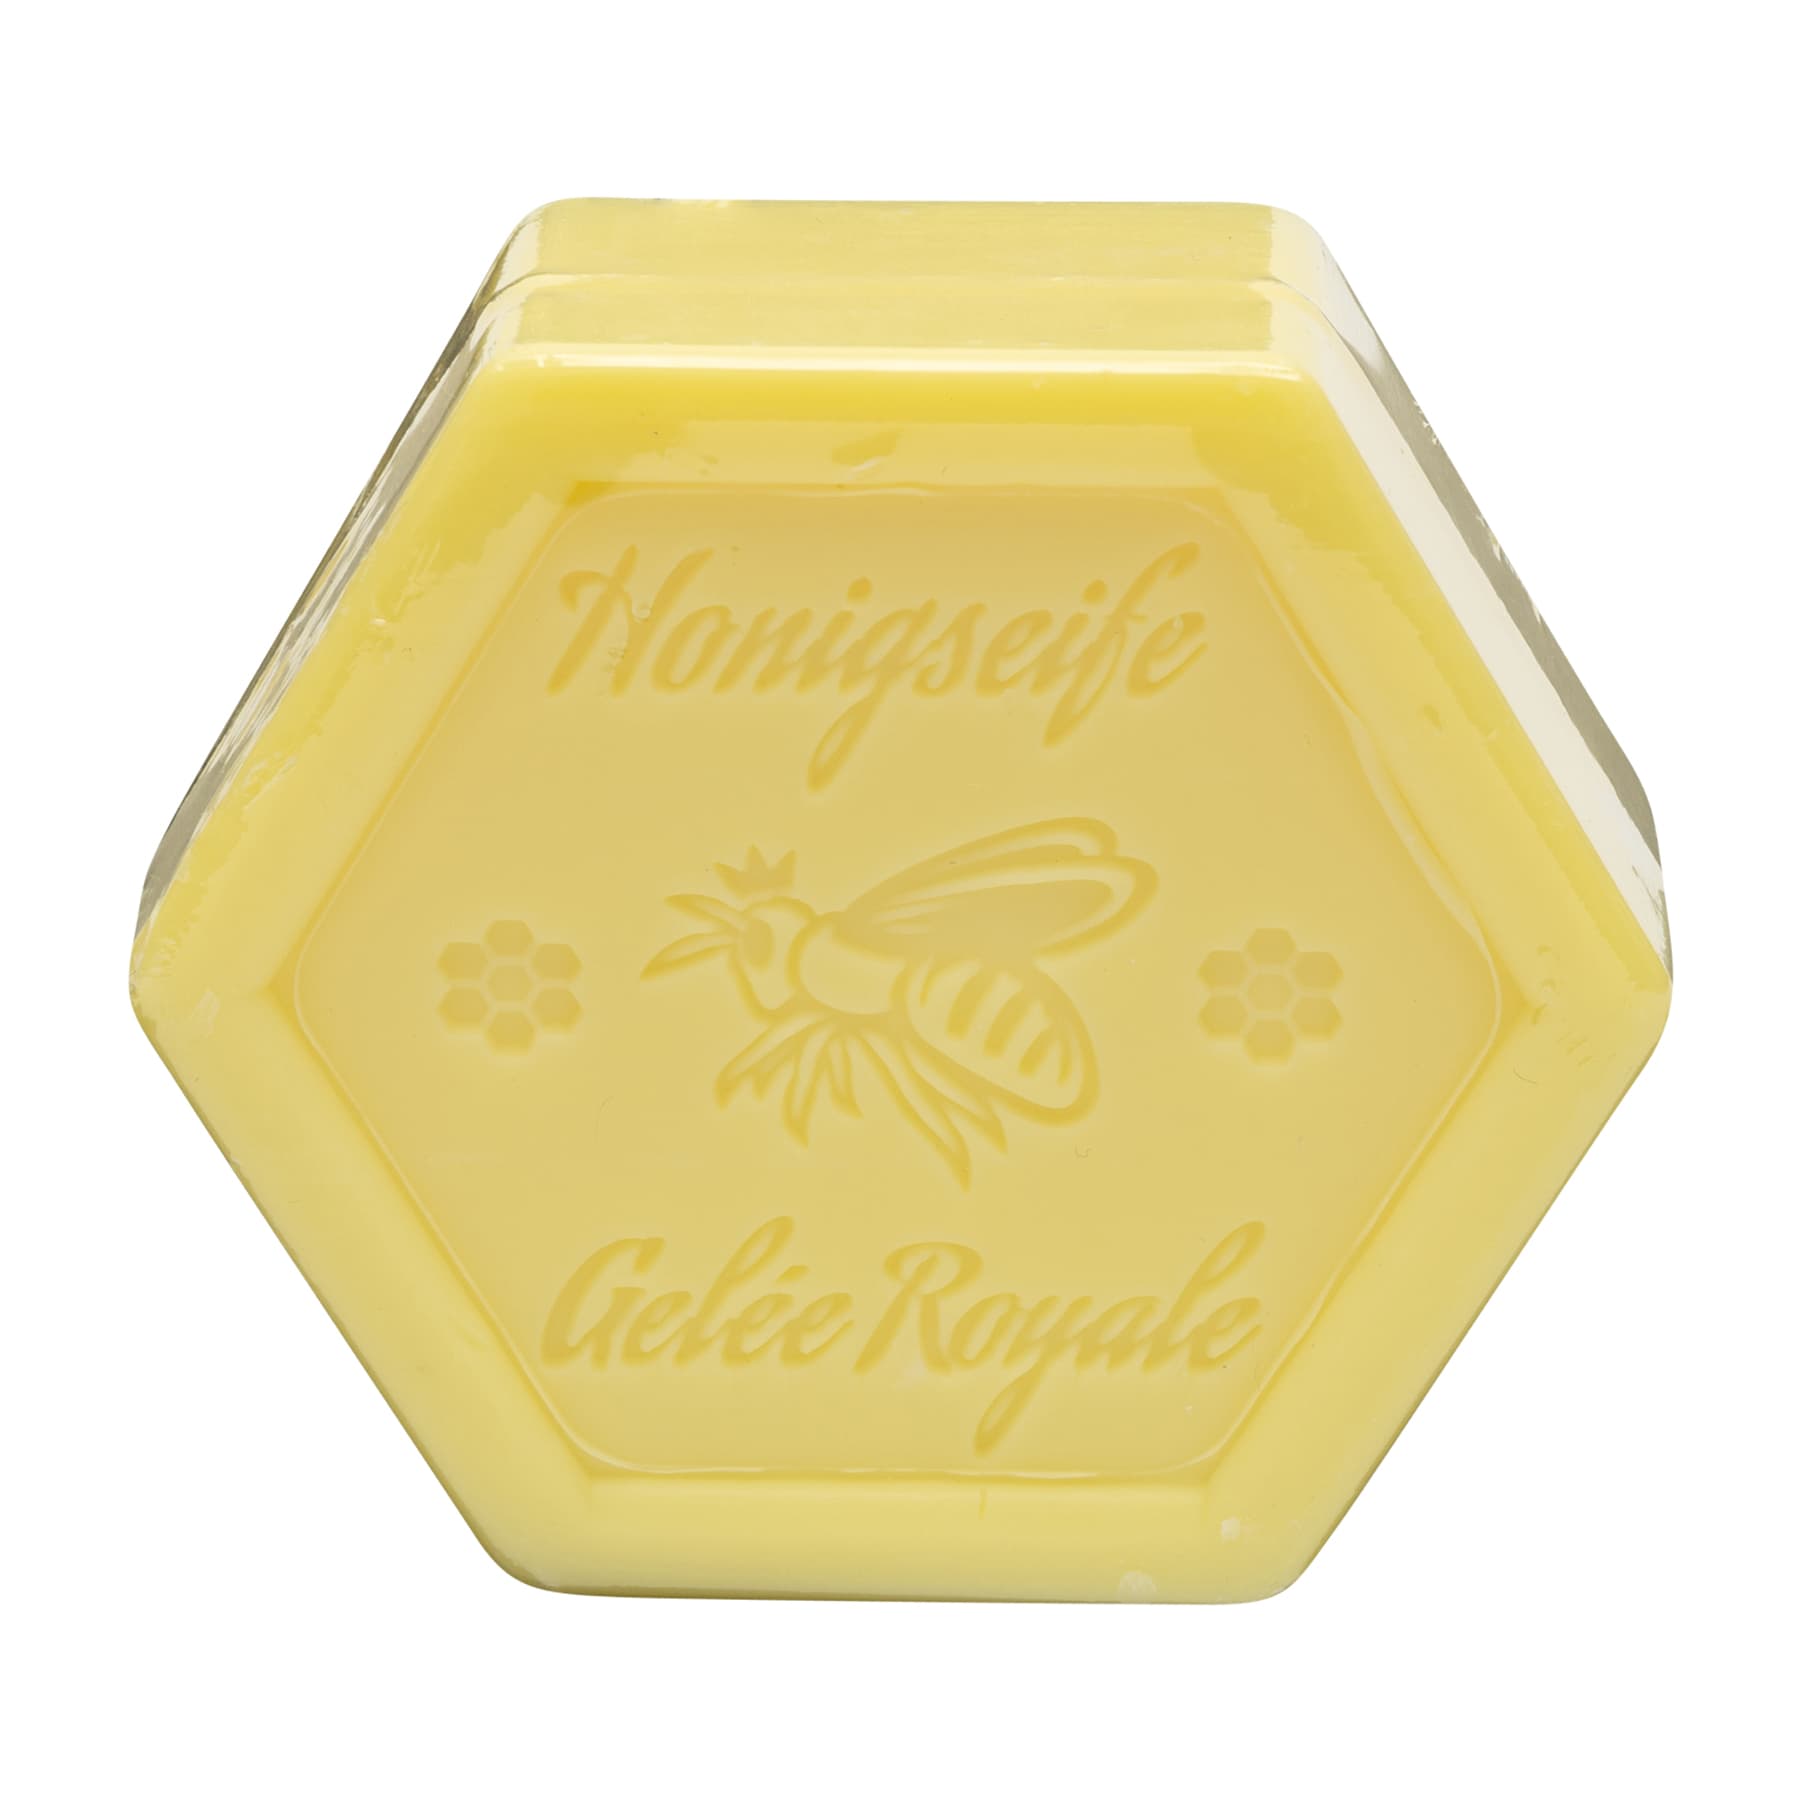 Honigseife mit Gelee Royale 100 g in Sechseckform, foliert, mit dem beigelegten Etikett